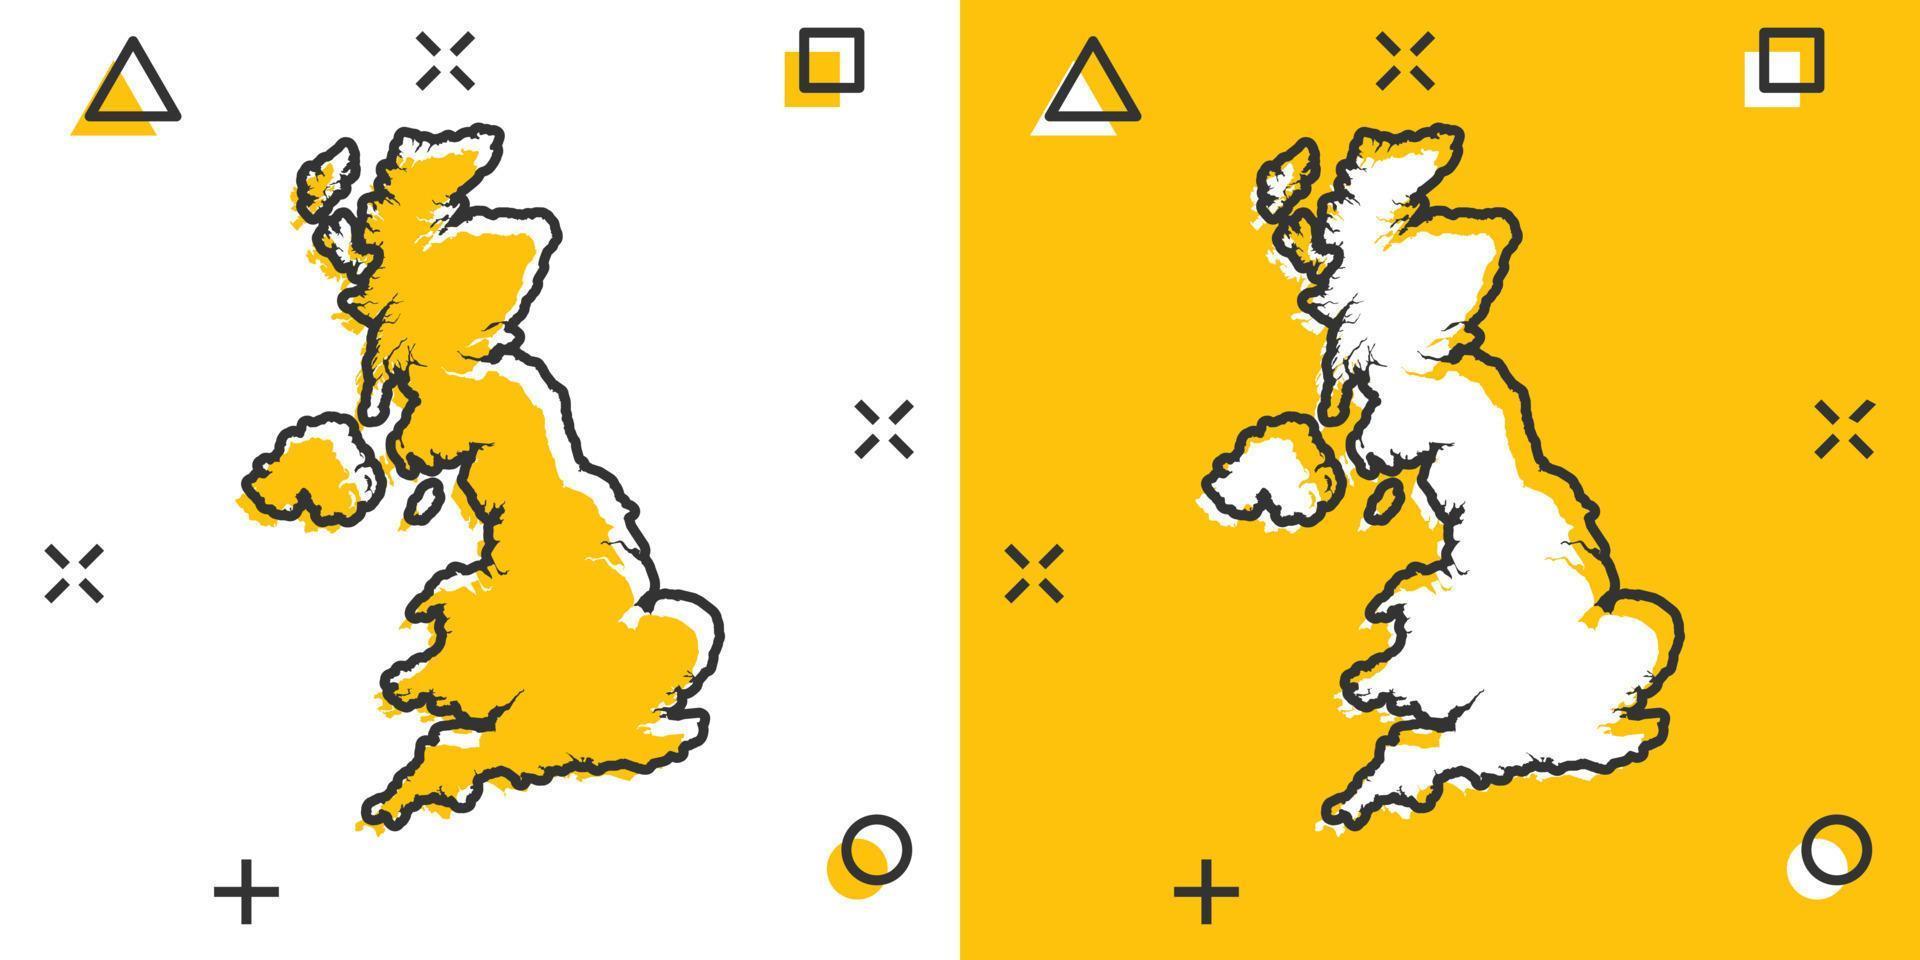 vetor cartoon ícone do mapa da Grã-Bretanha em estilo cômico. pictograma de ilustração de sinal da grã-bretanha. conceito de efeito de respingo de negócios de mapa de cartografia.